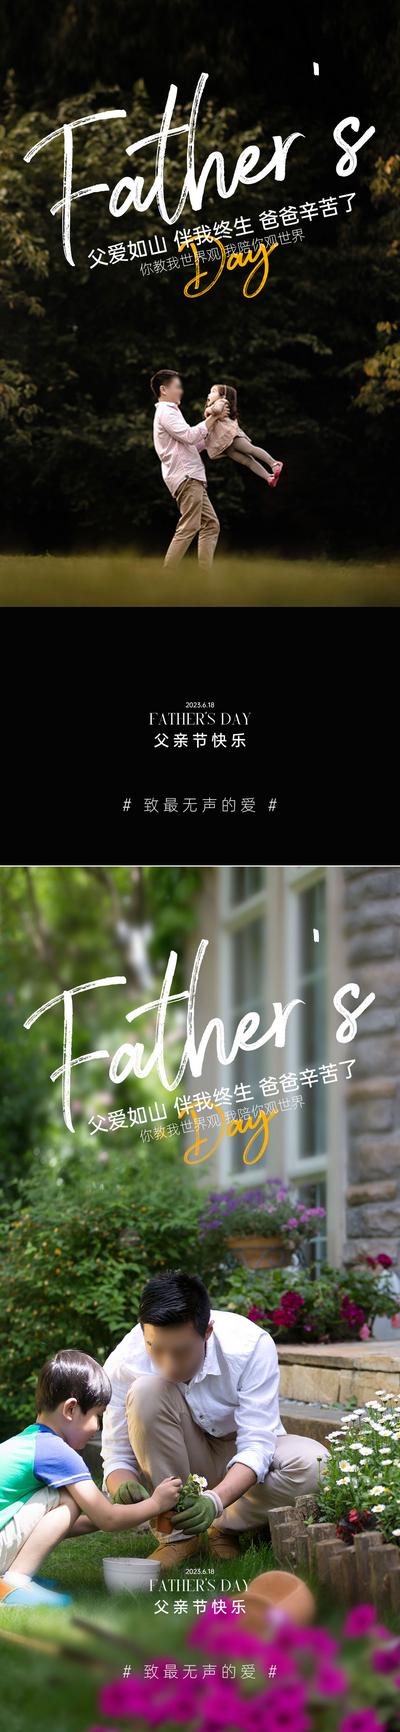 南门网 广告 海报 节日 父亲节 温馨 系列 父女 系列